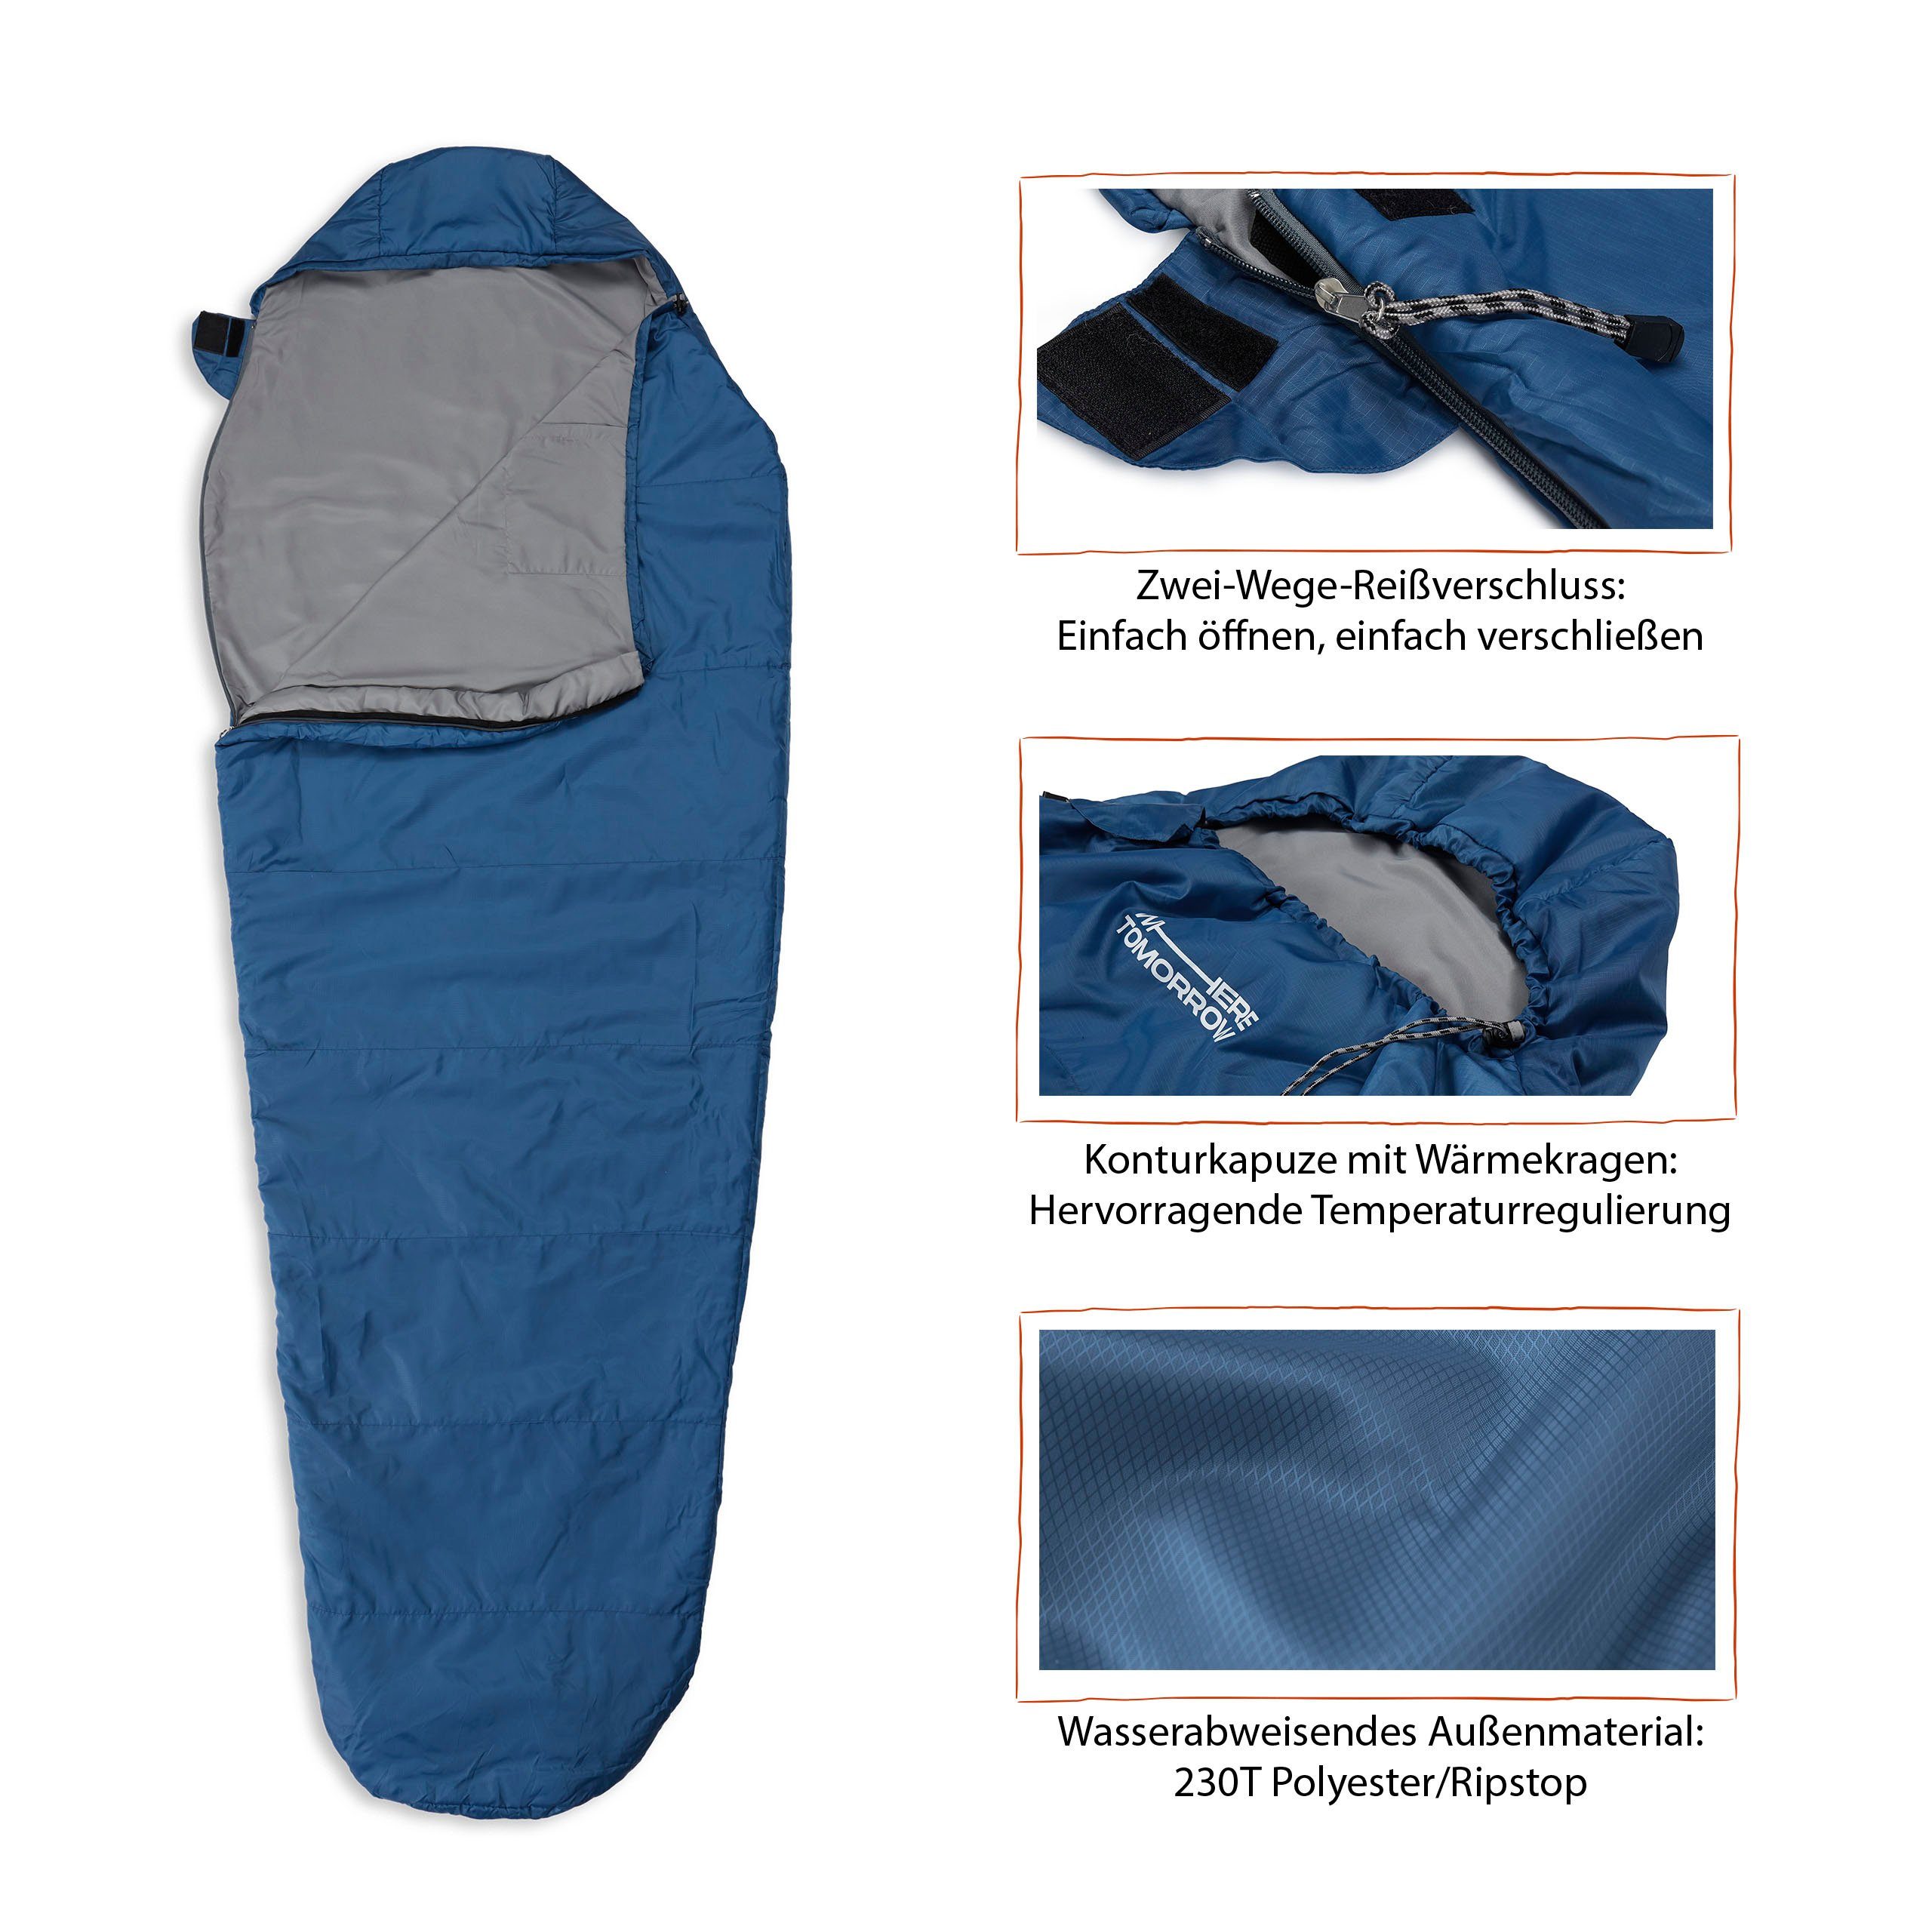 Lumaland Mumienschlafsack Camping 220x80x50, Schulterbereich royalblau wasserabweisend -5°C Where Outdoor Camping Wärmekragen im Schlafsack Tomorrow